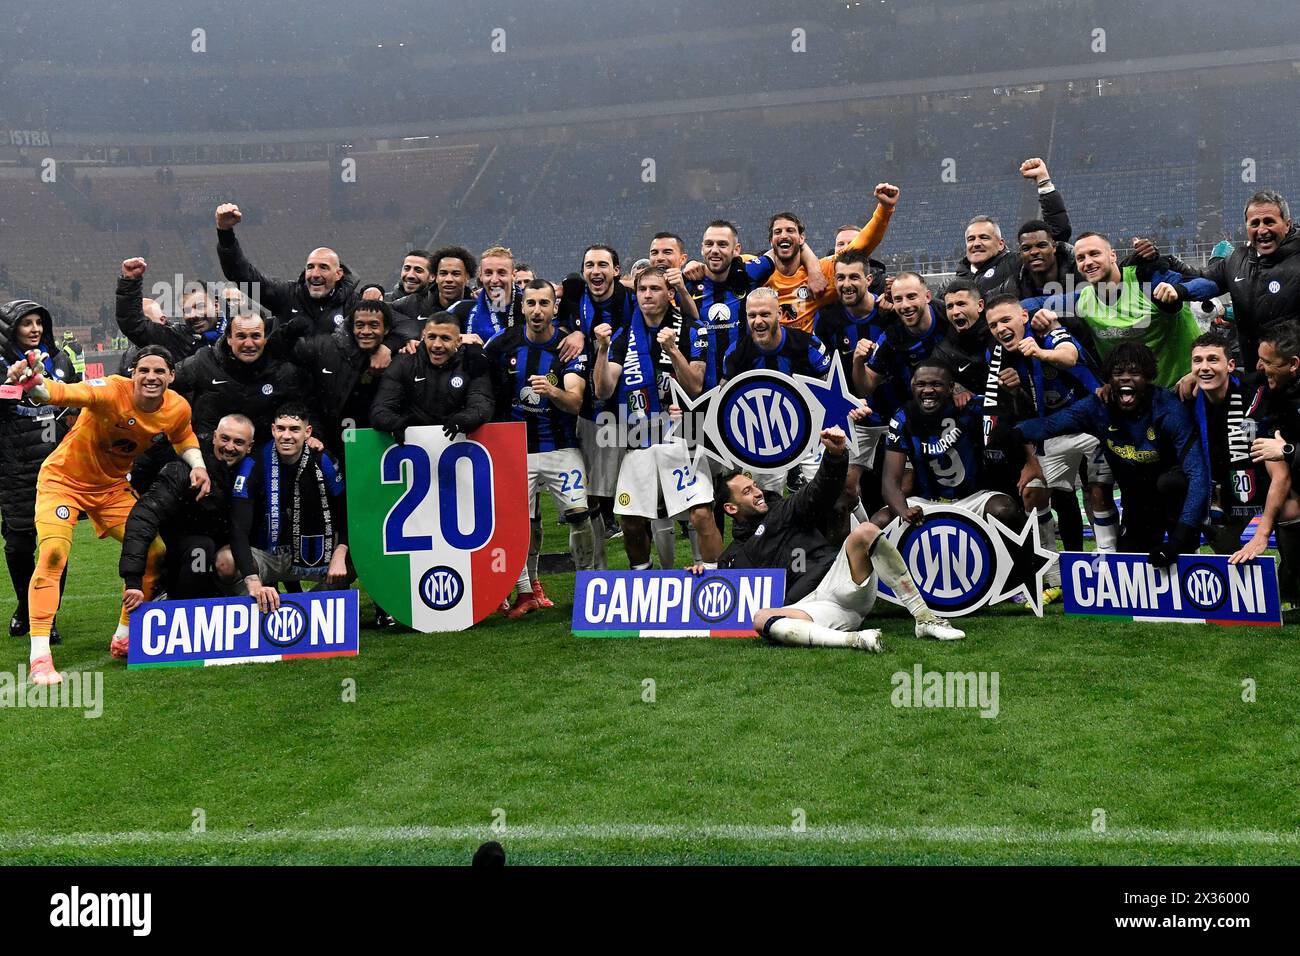 Les joueurs et le personnel du FC Internazionale célèbrent la victoire du championnat italien à la fin du match de Serie A entre l'AC Milan et le FC Internazionale au stade San Siro de Milan (Italie), le 22 avril 2023. Le FC Internazionale a remporté le 20e 'scudetto' de son histoire. Banque D'Images